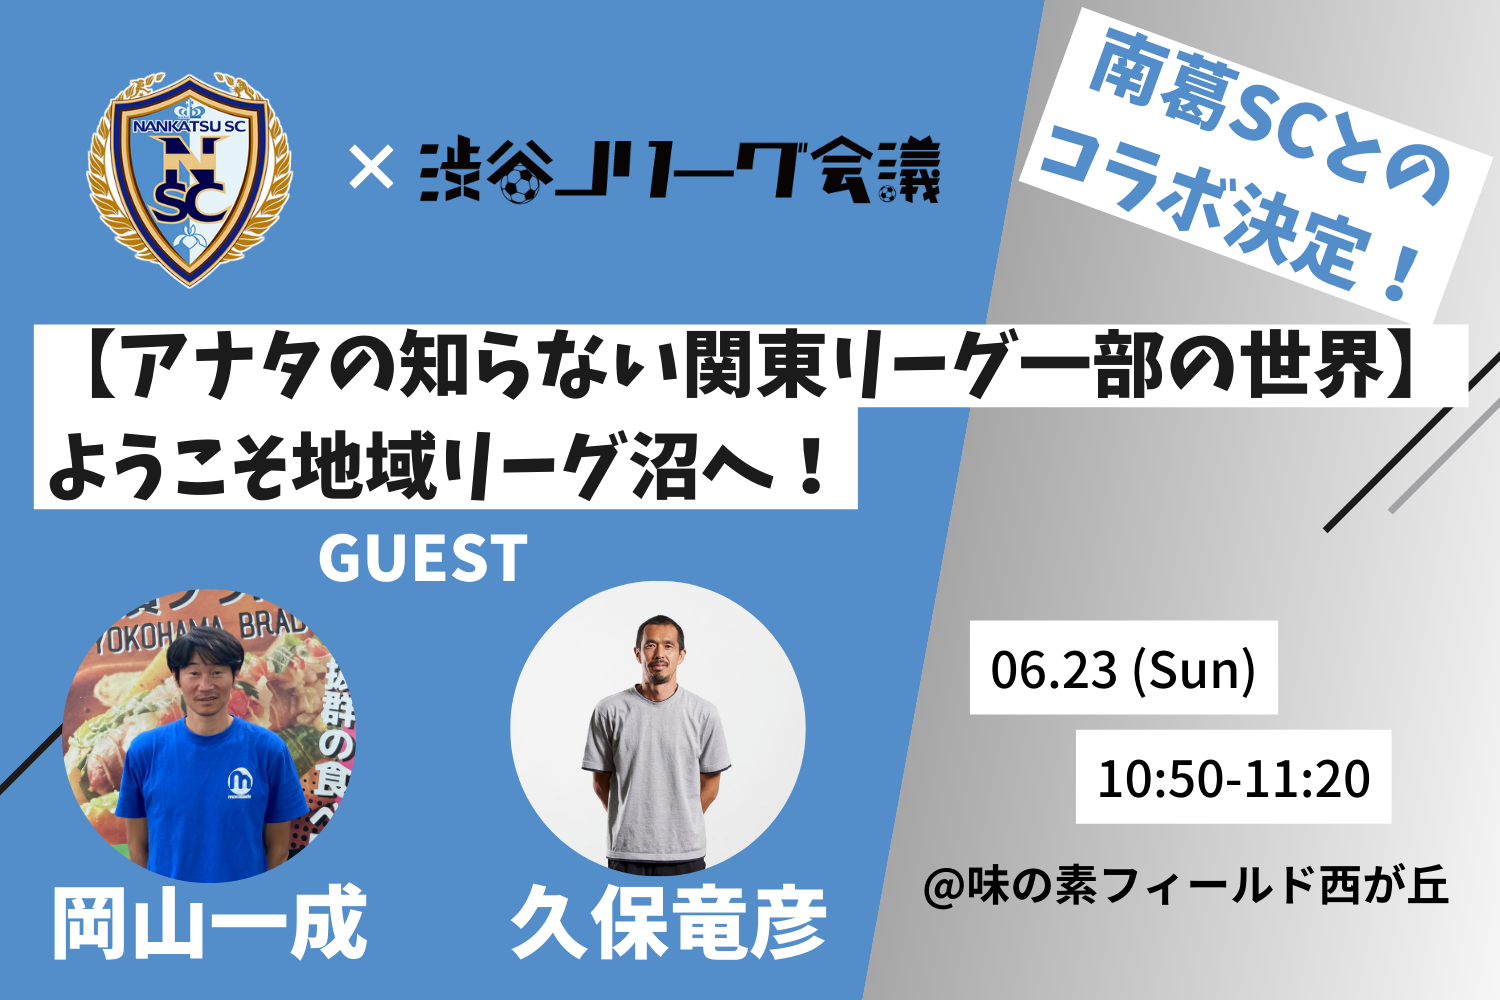 渋谷Jリーグ会議と南葛SCがコラボ！6/23の南葛SC・ホーム戦で久保竜彦さん×岡山一成さんのトークショーを実施！